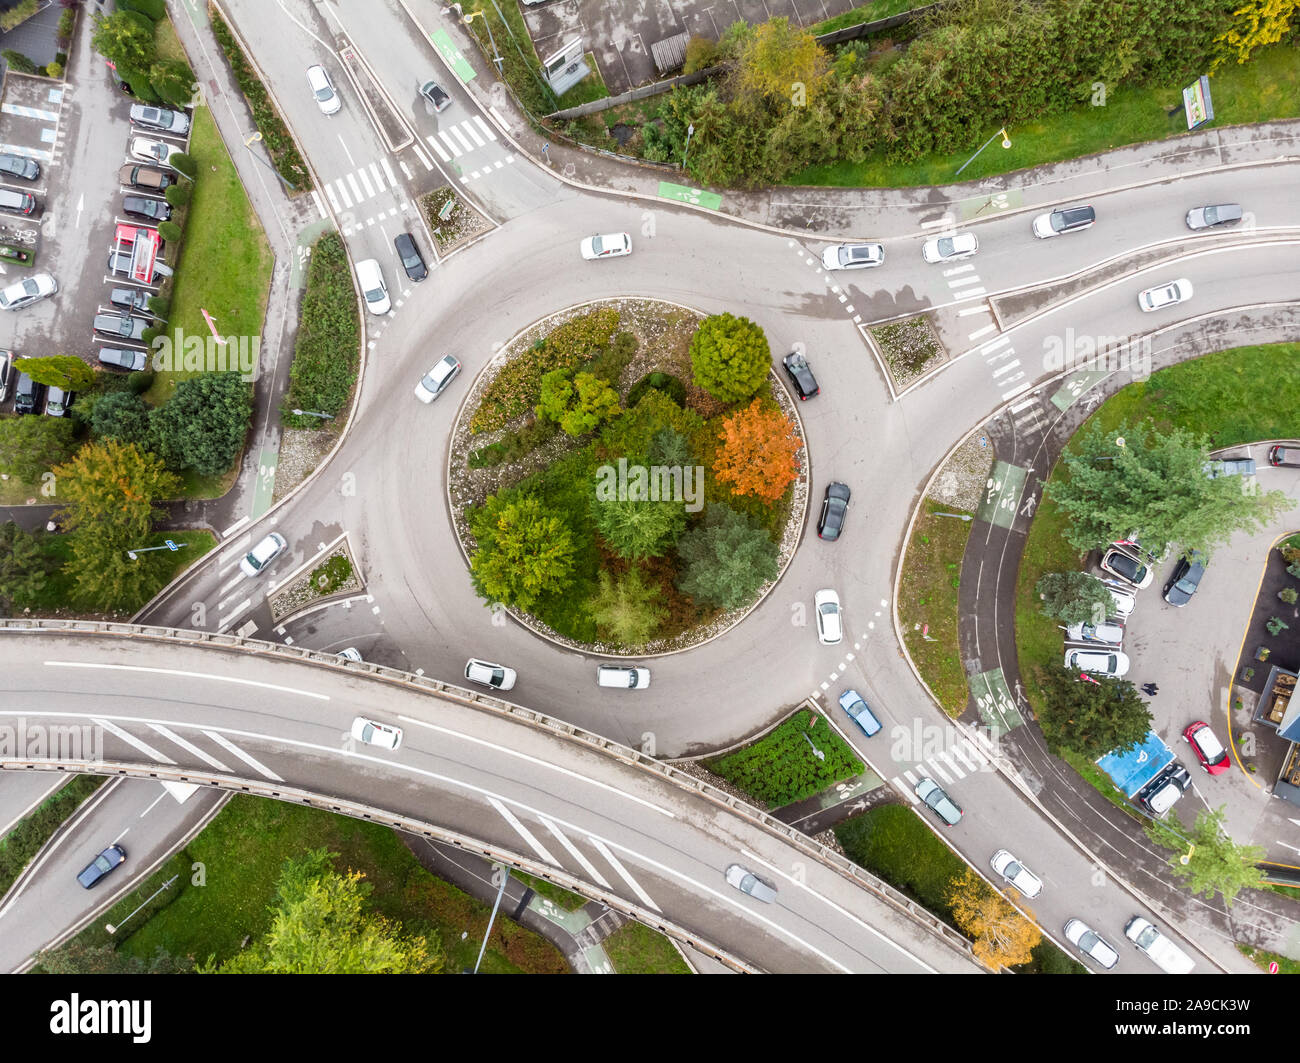 Kreisverkehr Straße Kreuzung mit Fahrzeugbetrieb und grünen Bäumen, Luftaufnahme von Drone, runde Form und Gassen, Verkehrsknotenpunkt arc Stockfoto